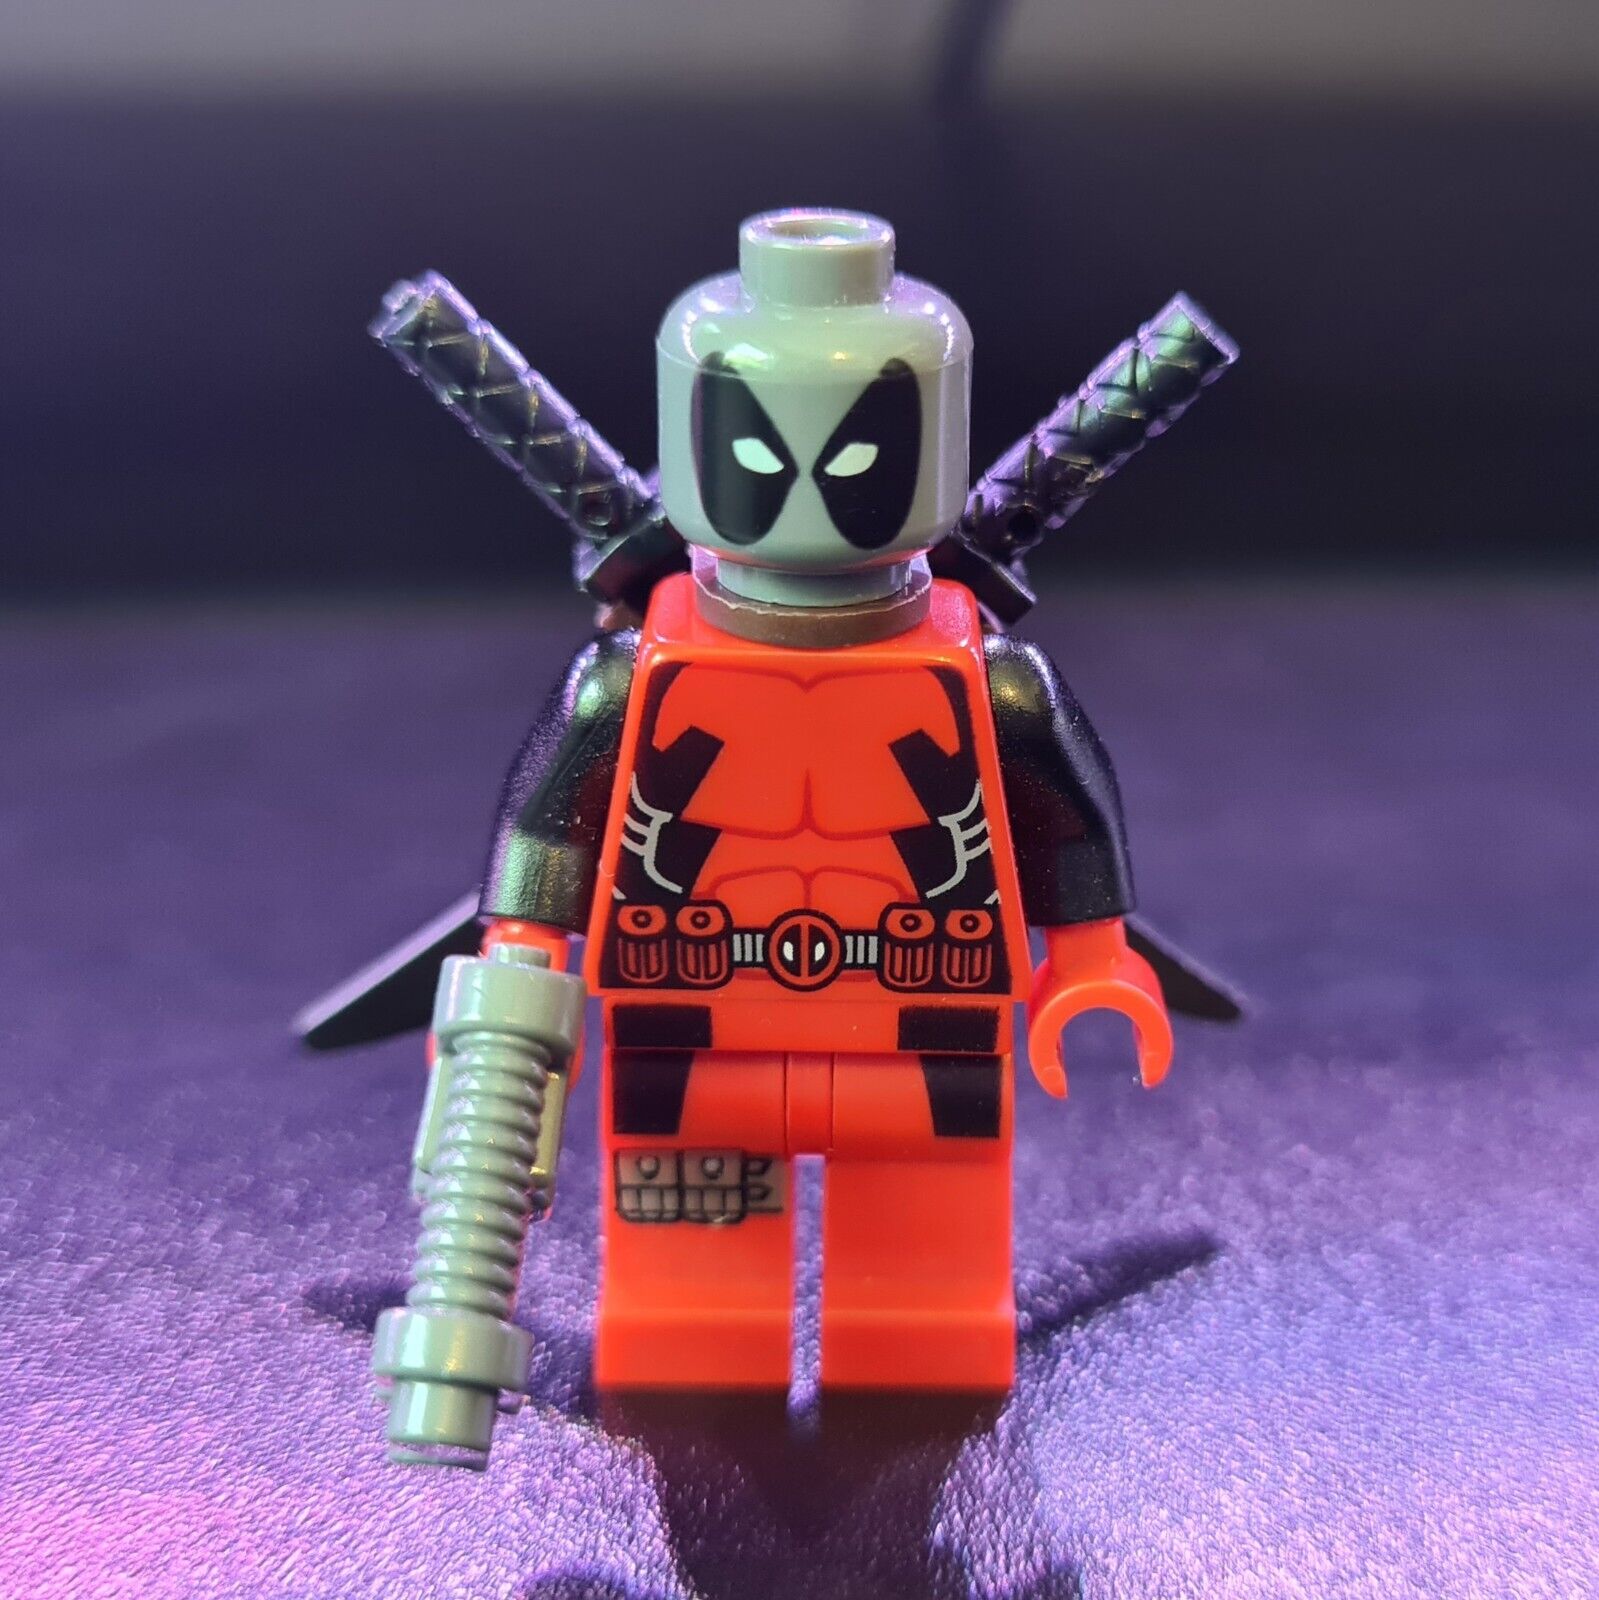 LEGO Deadpool minifigure misprint